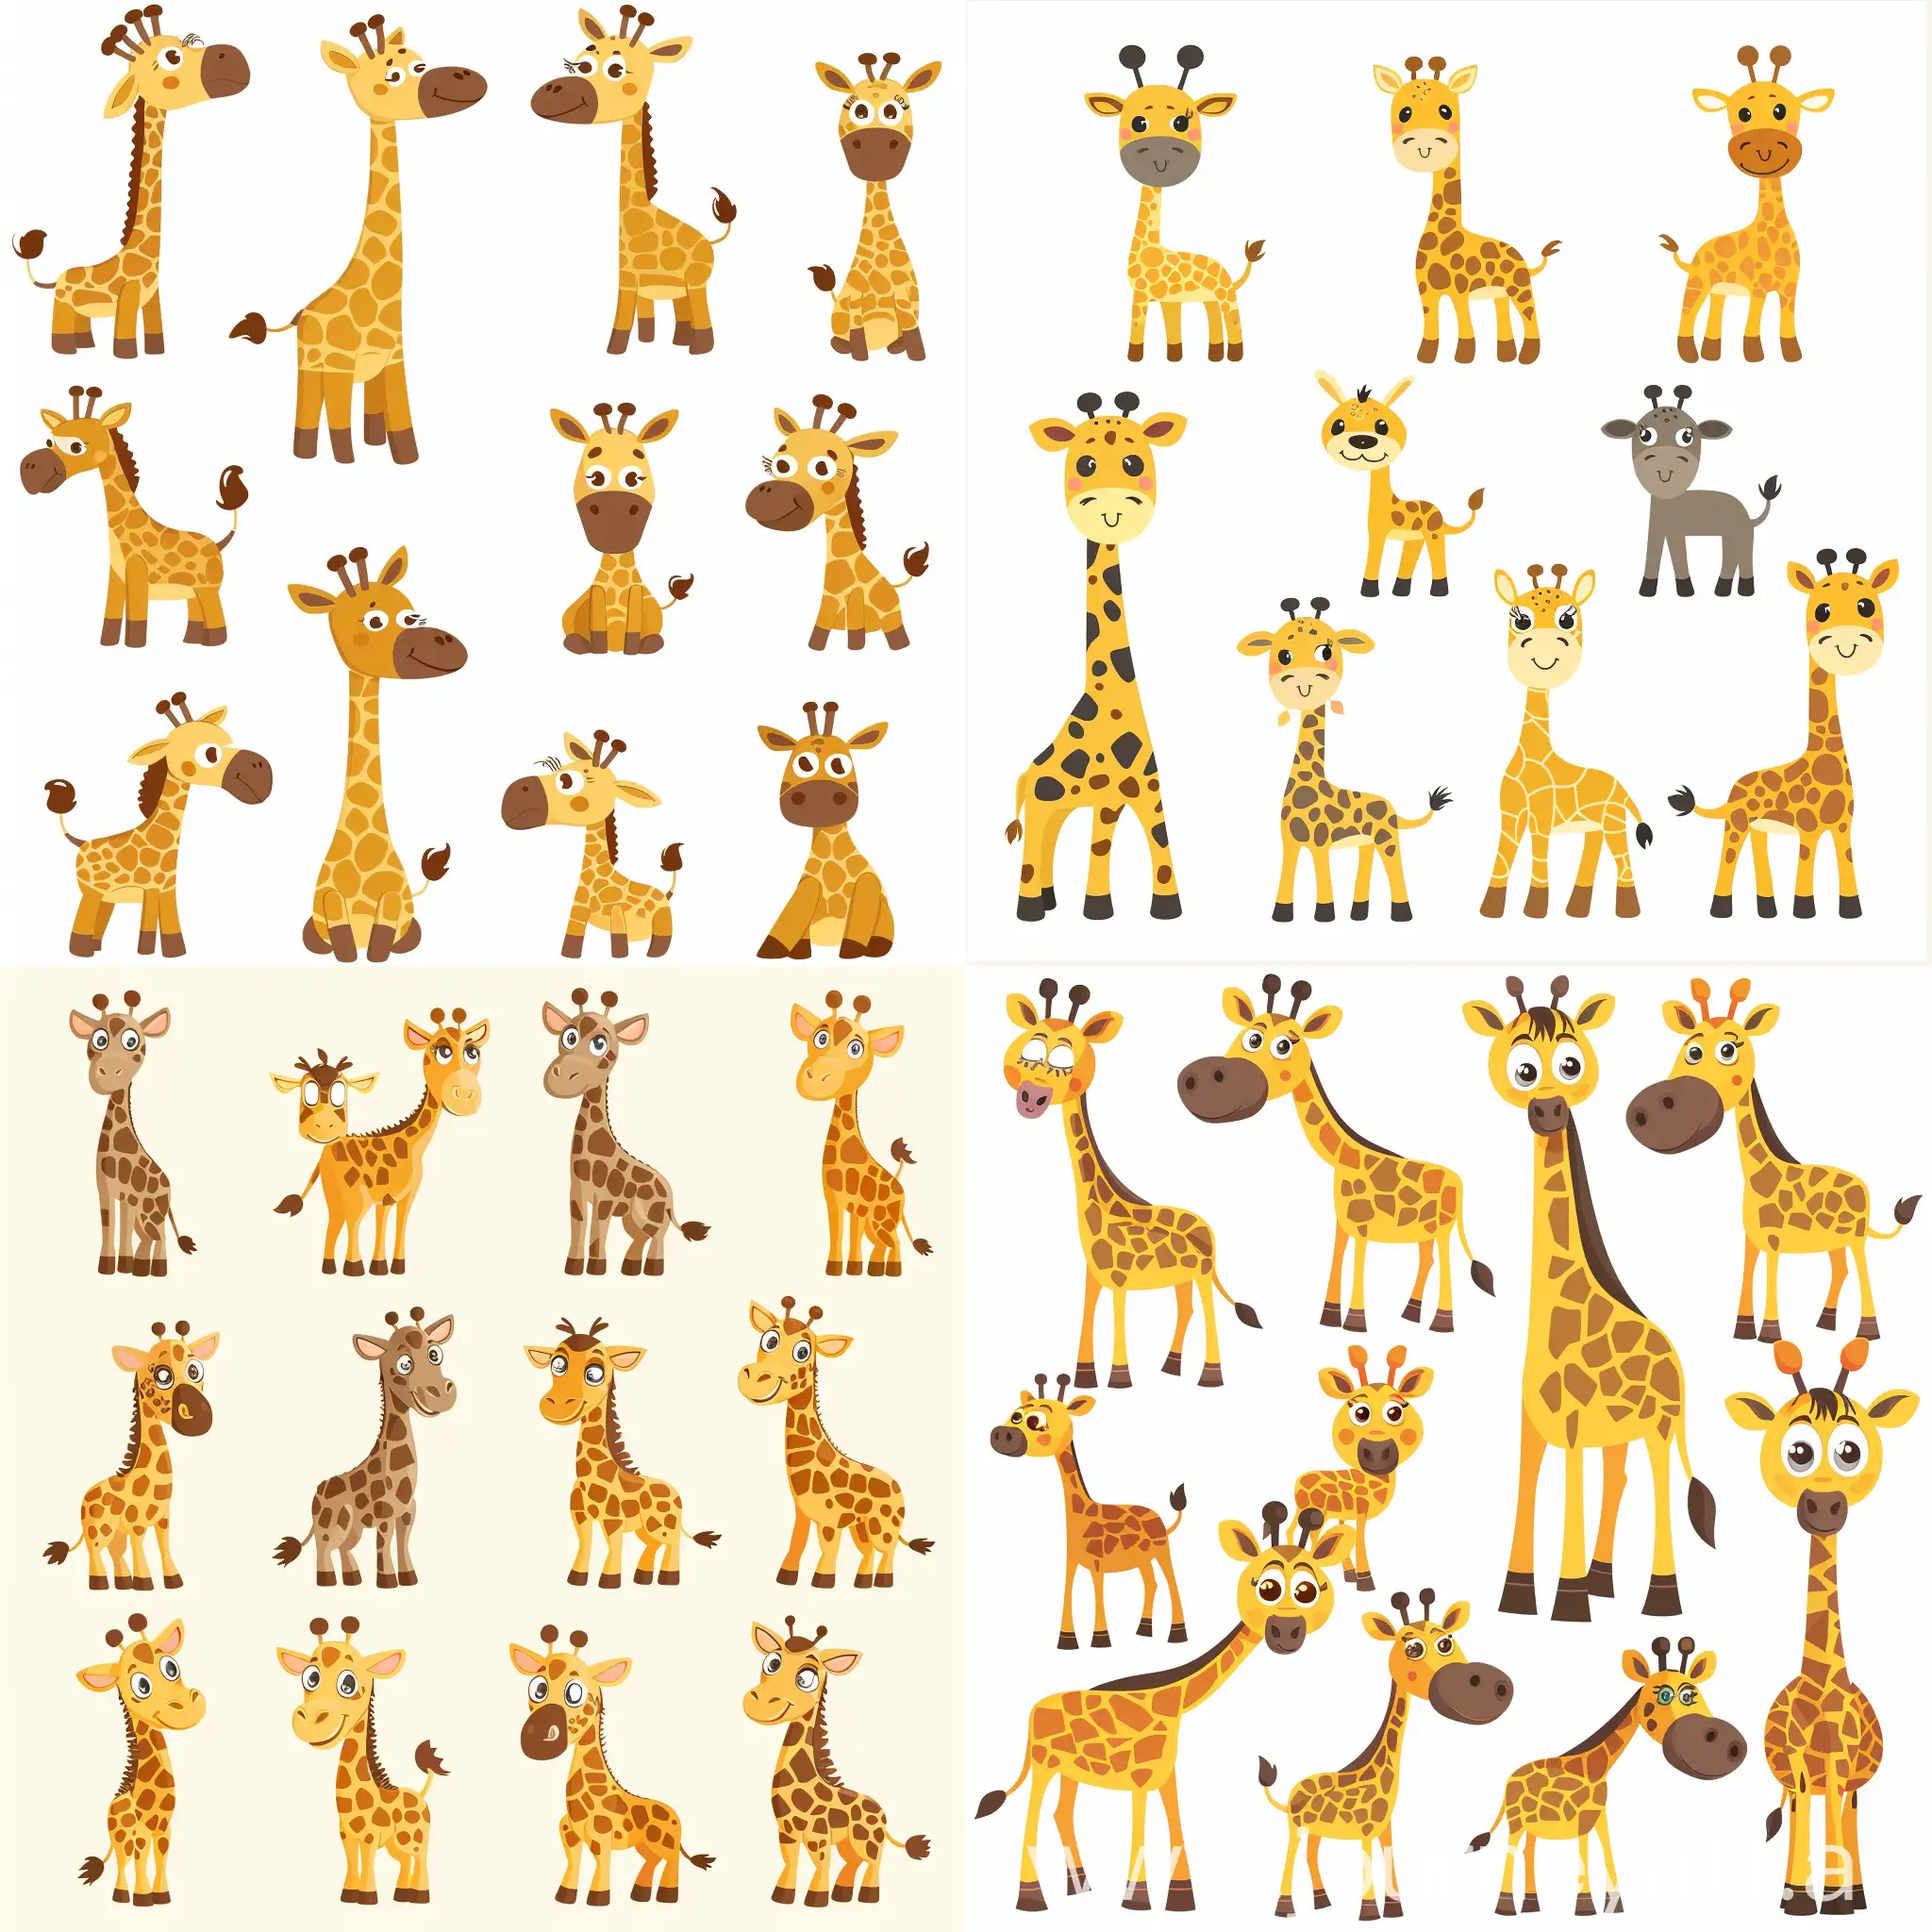 cute giraffe cartoon collection vector